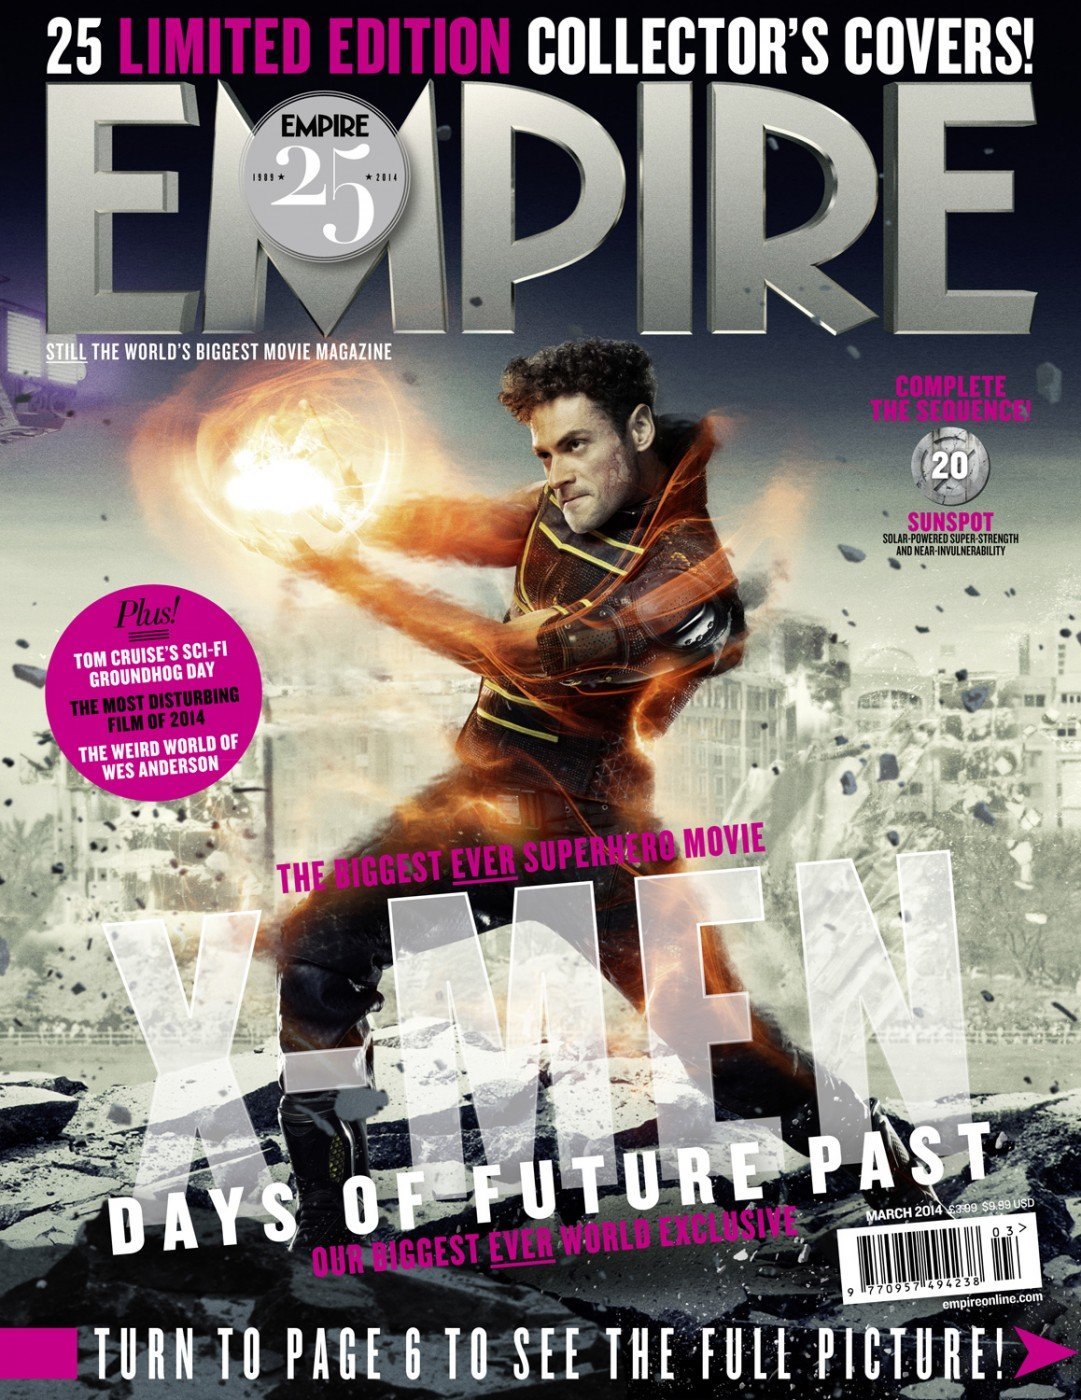 x-men-days-of-future-past-sunspot-adan-canto-empire-cover